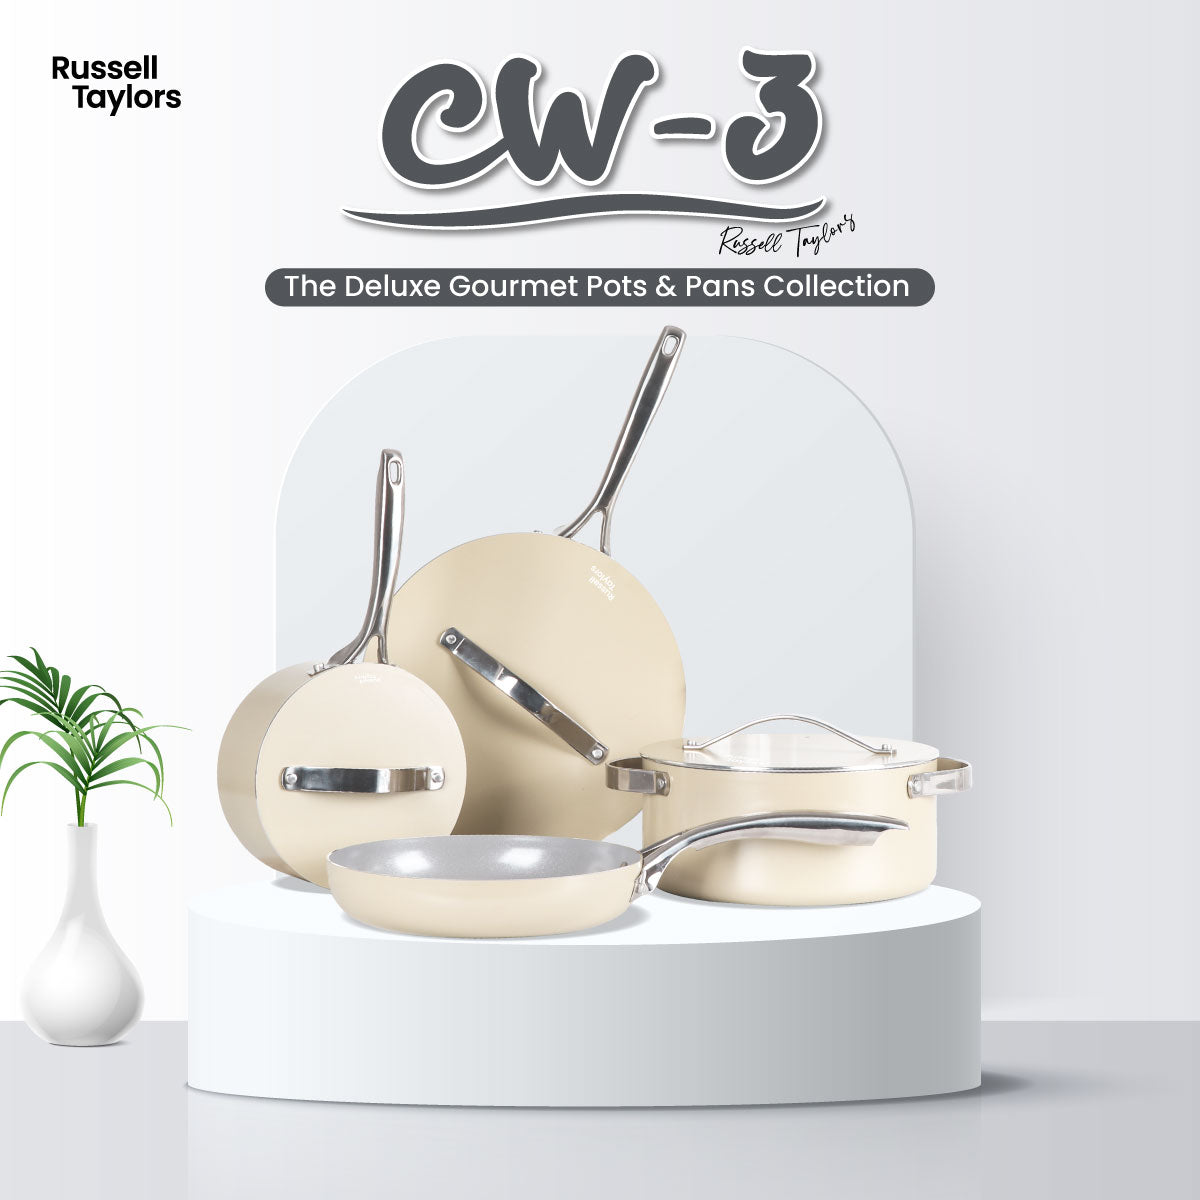 Caraway Deluxe Cookware Set in Cream